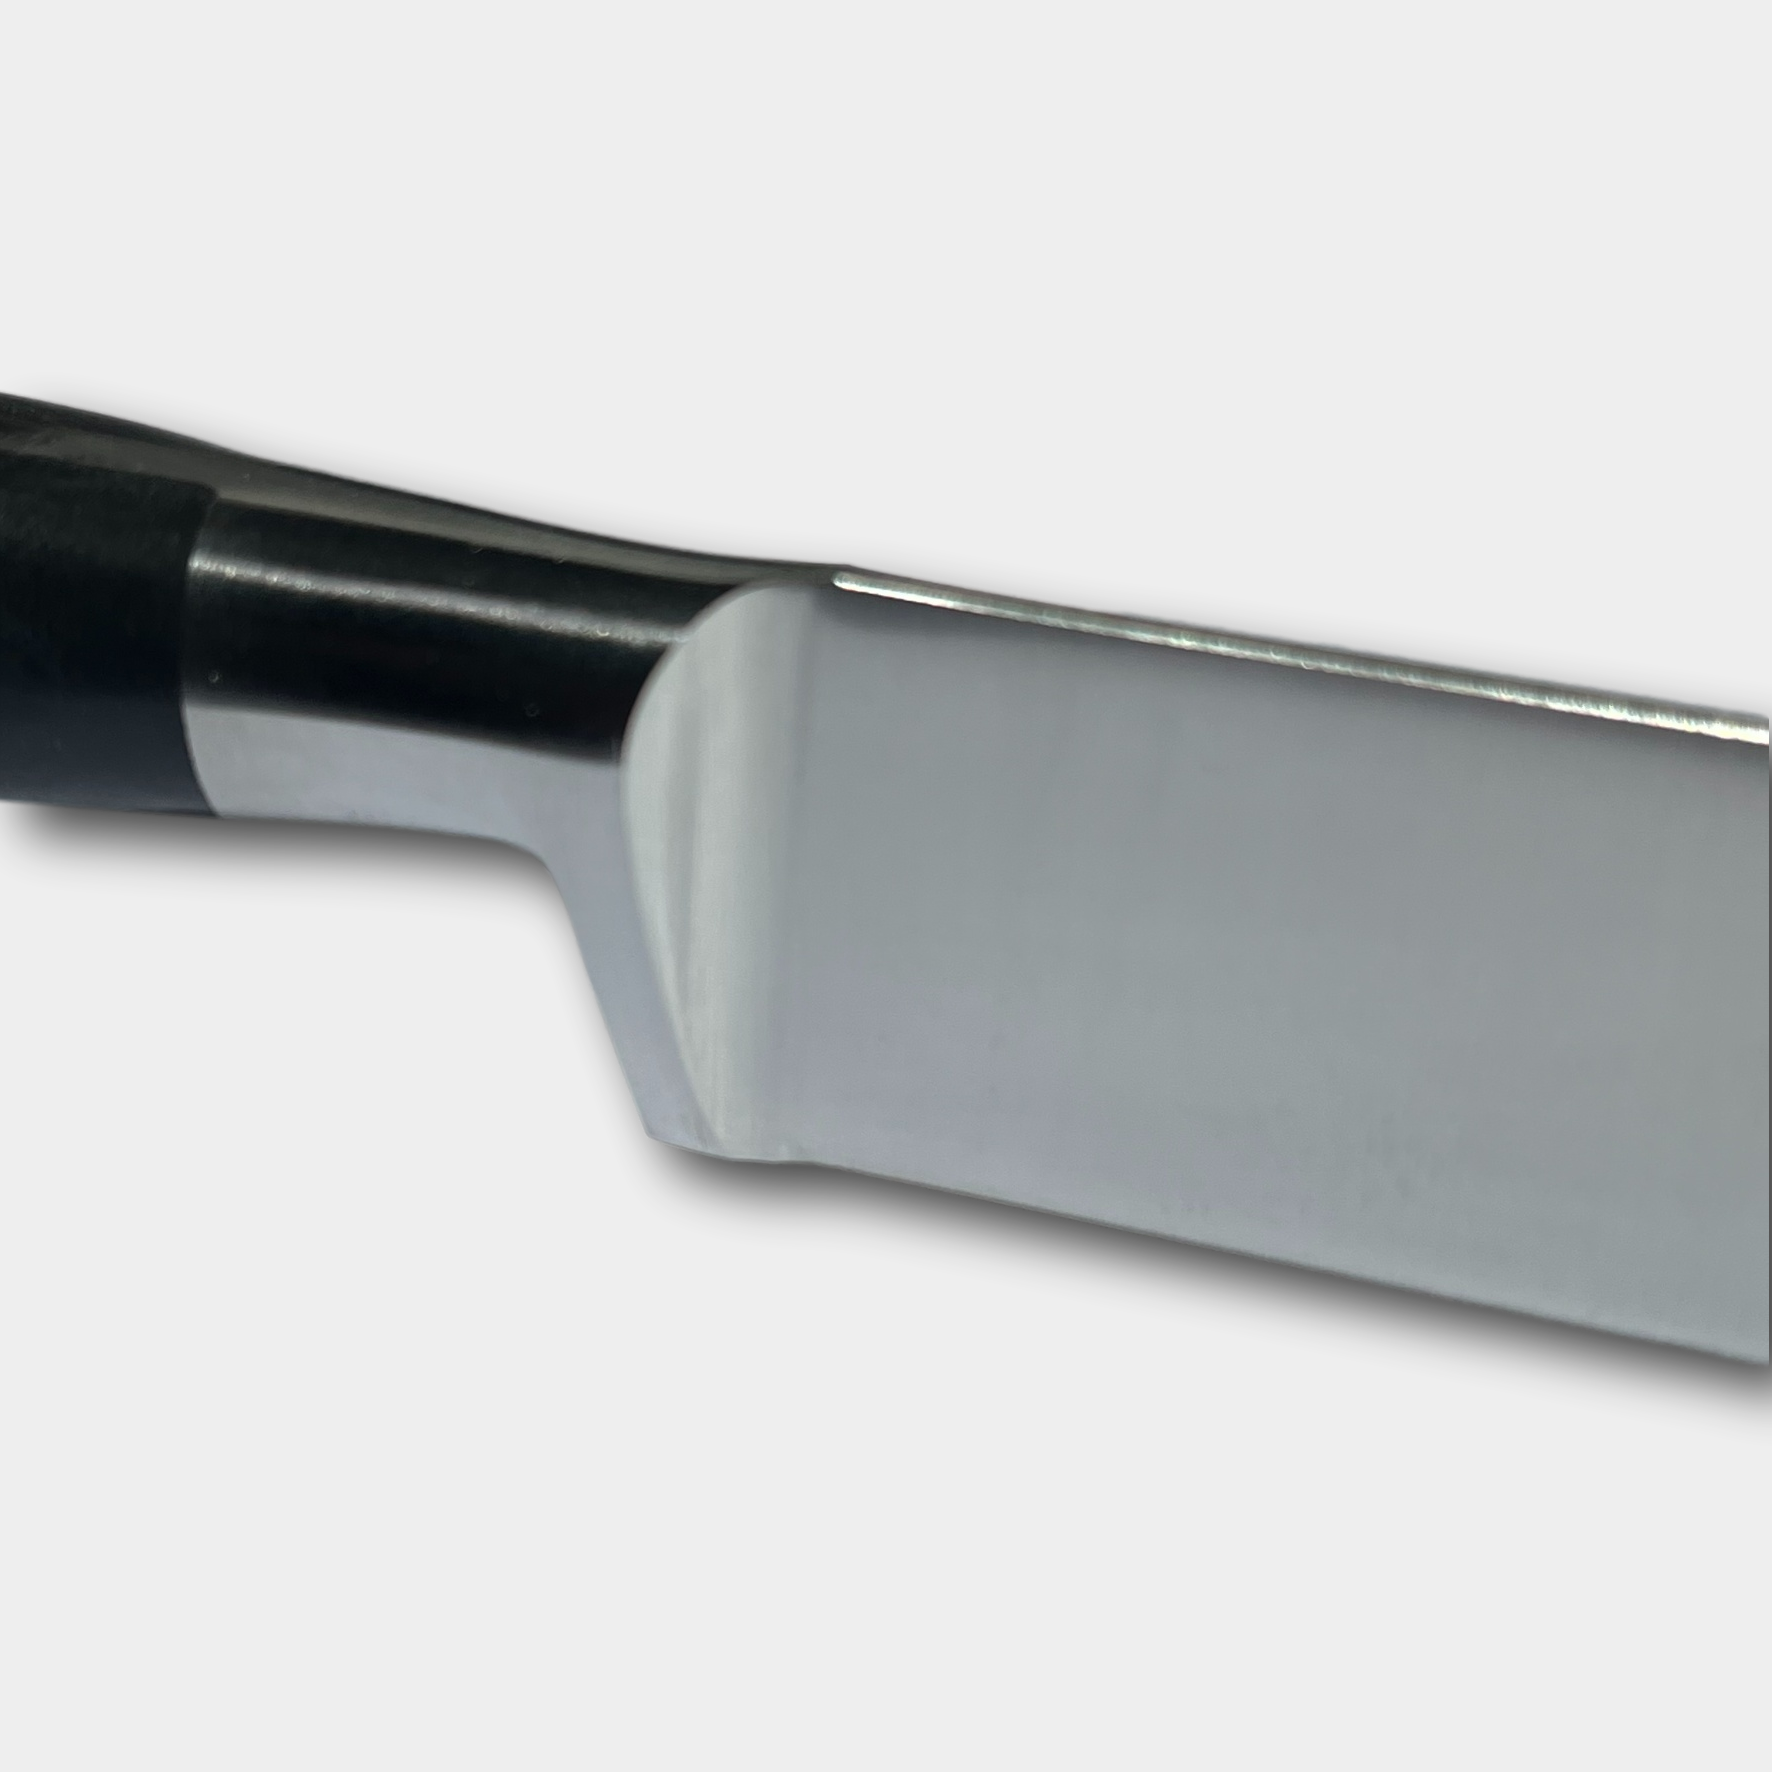 Lion Sabtier Ideal Steel 20cm Bread Knife